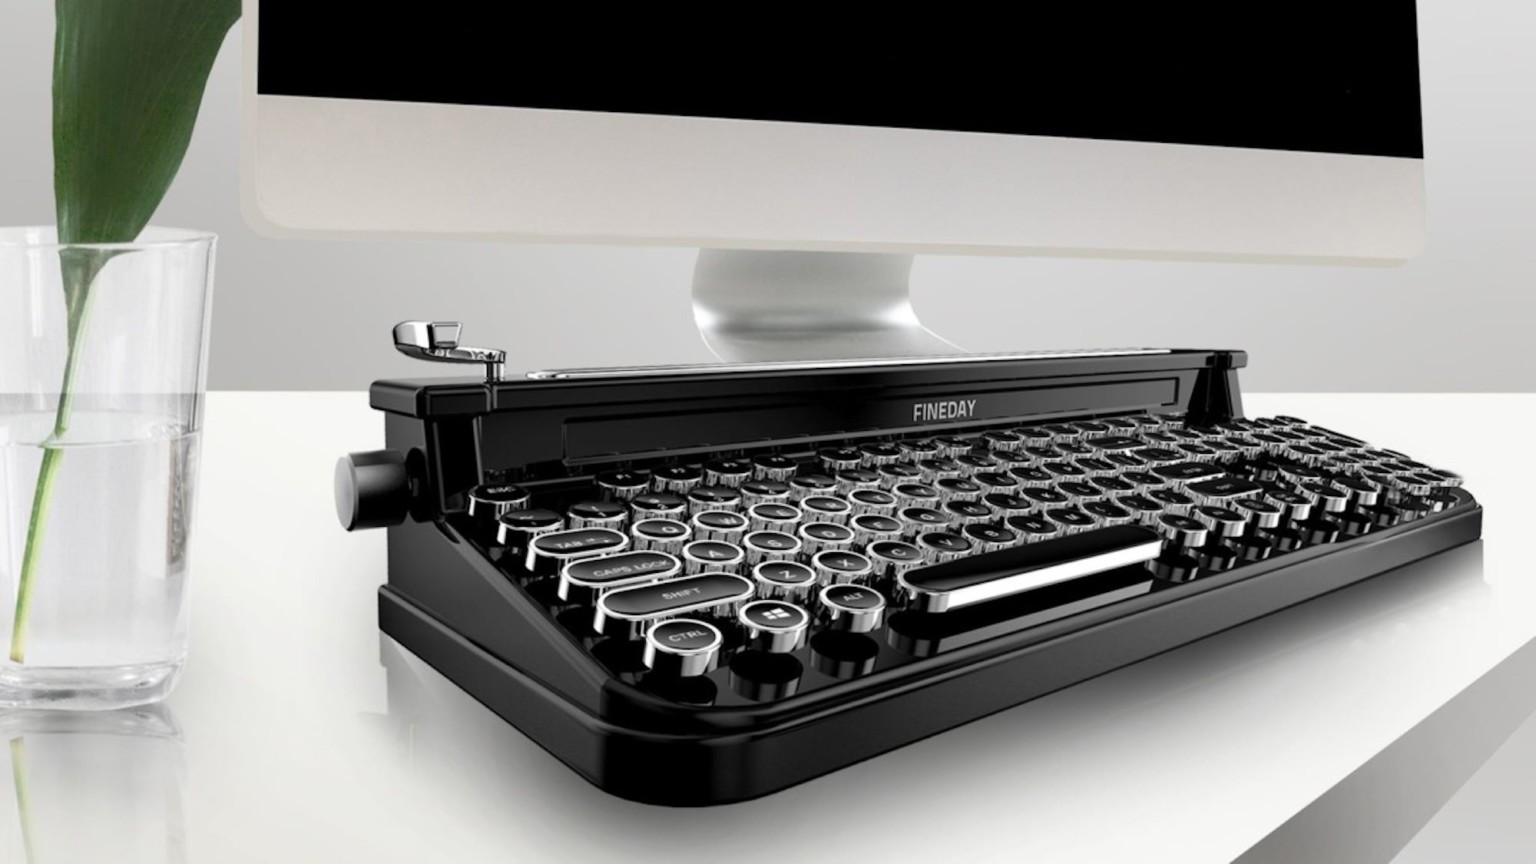 typewriter mac keyboard